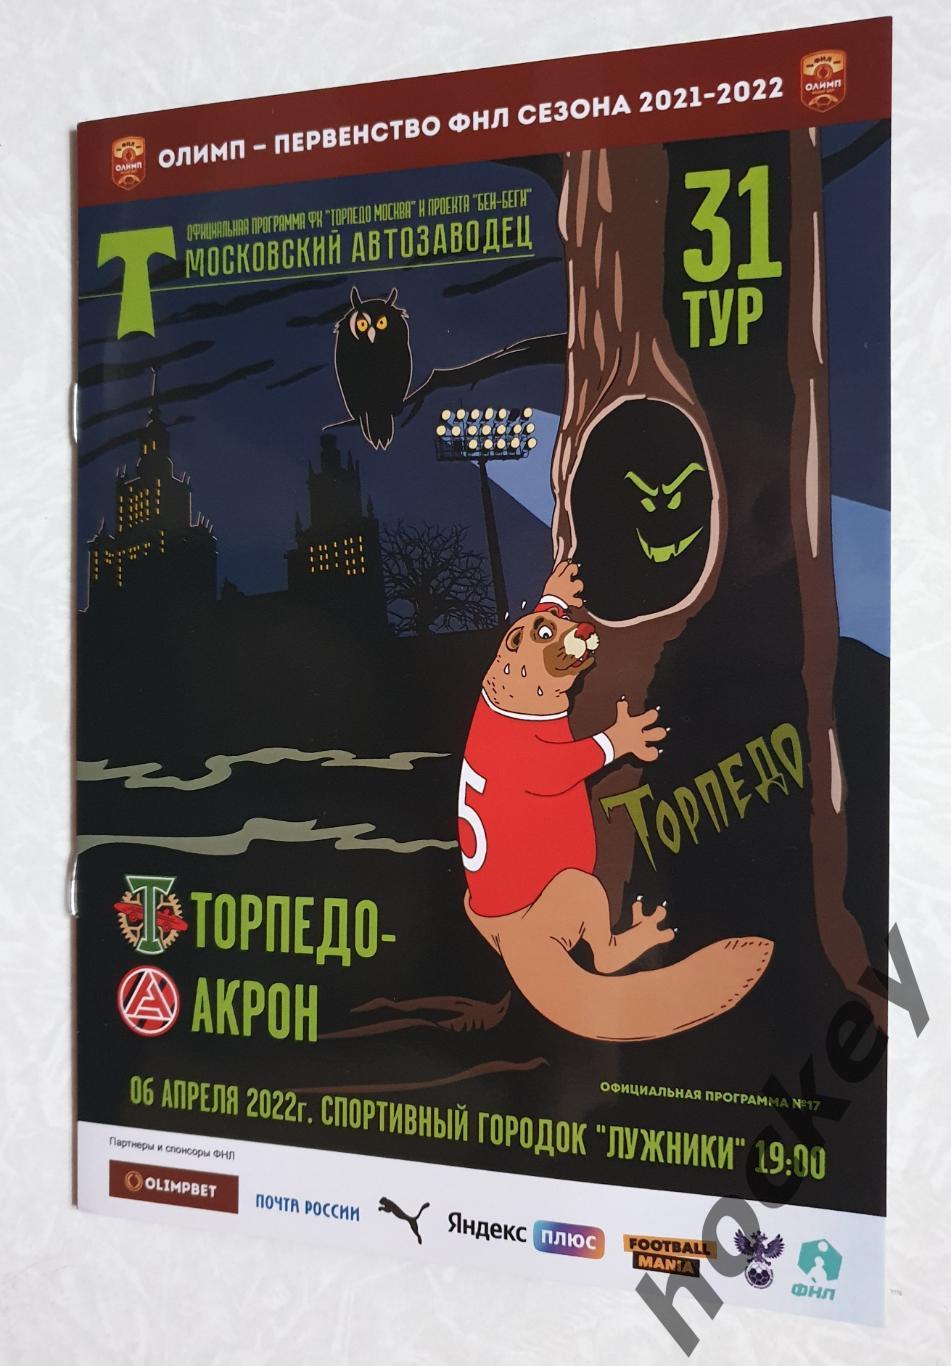 Торпедо Москва - Акрон Тольятти 6.04.2022. Официальная программка матча.